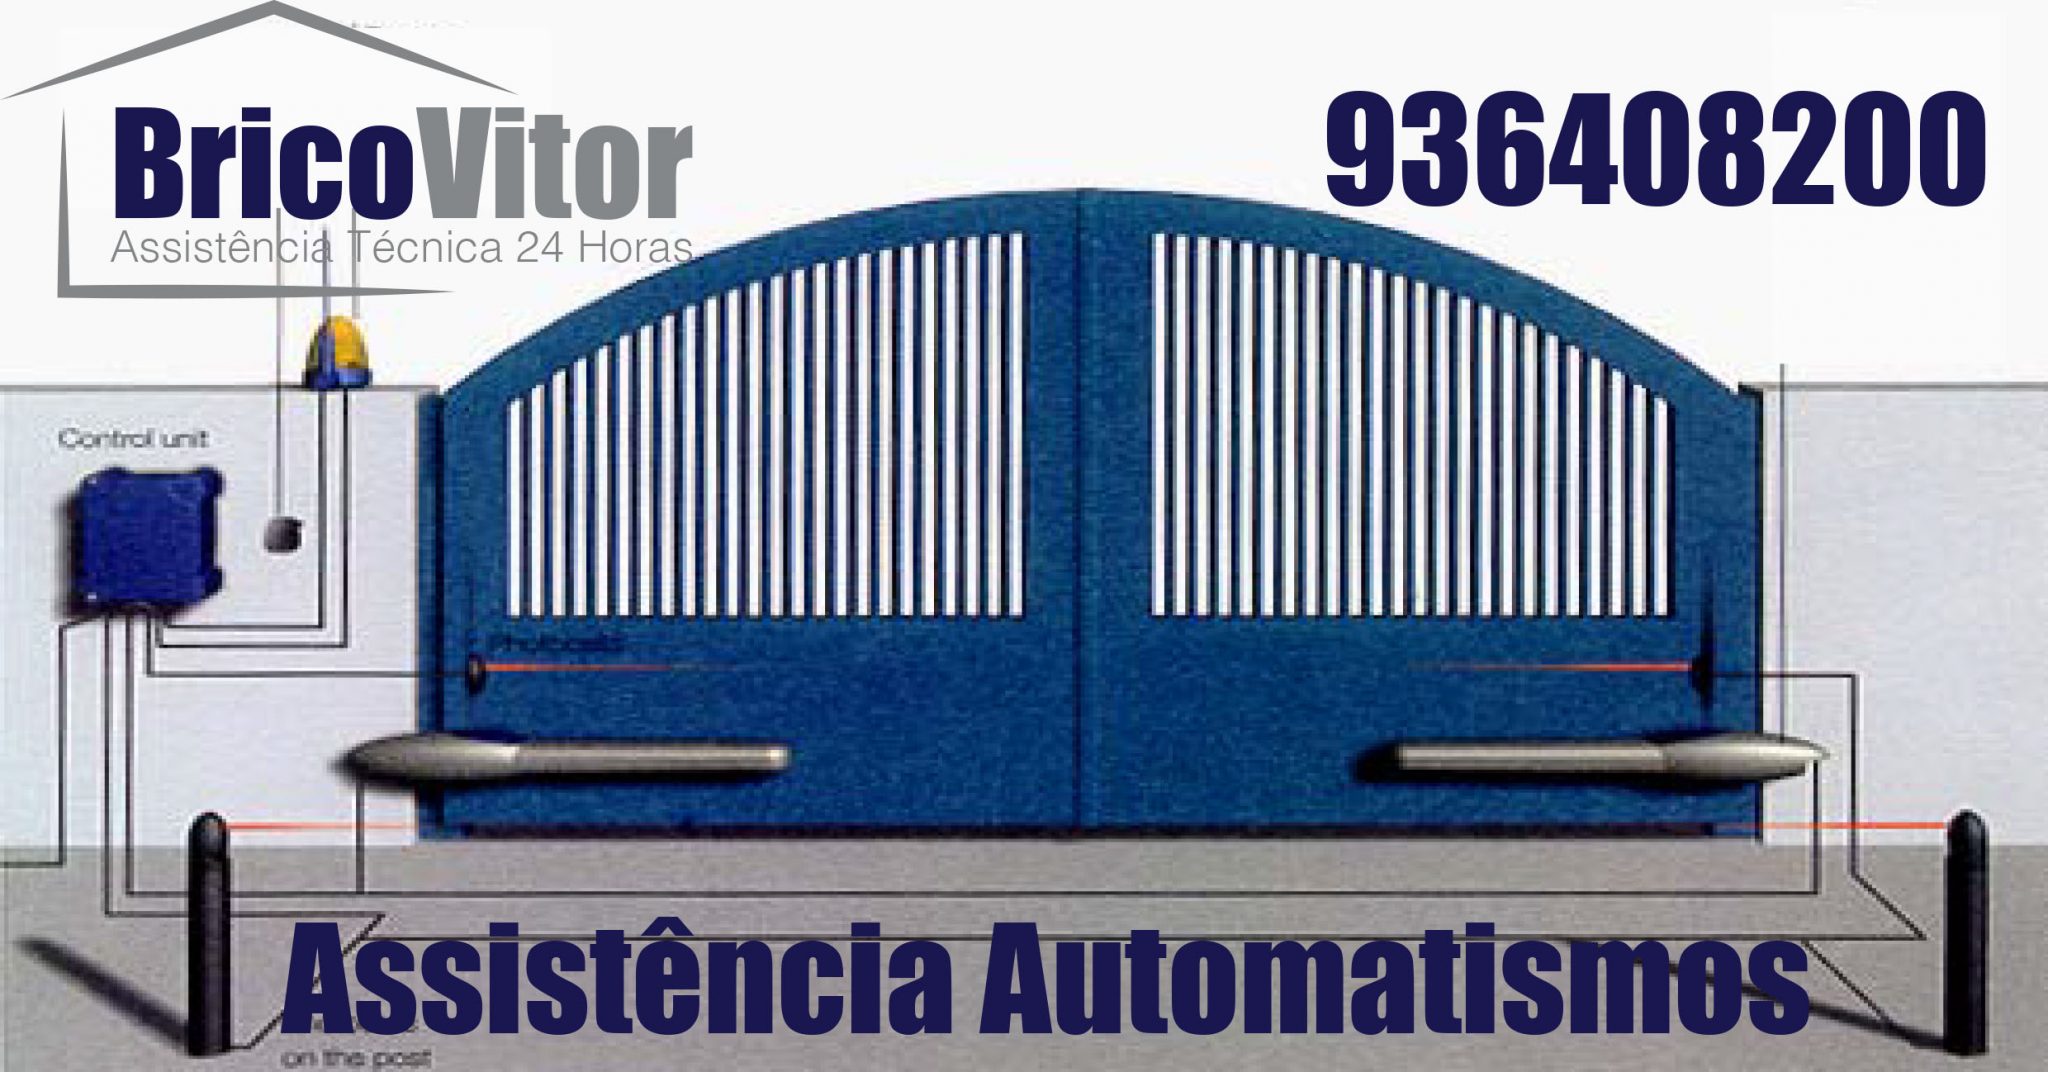 Assistência Automatismos Ponte de Lima, 